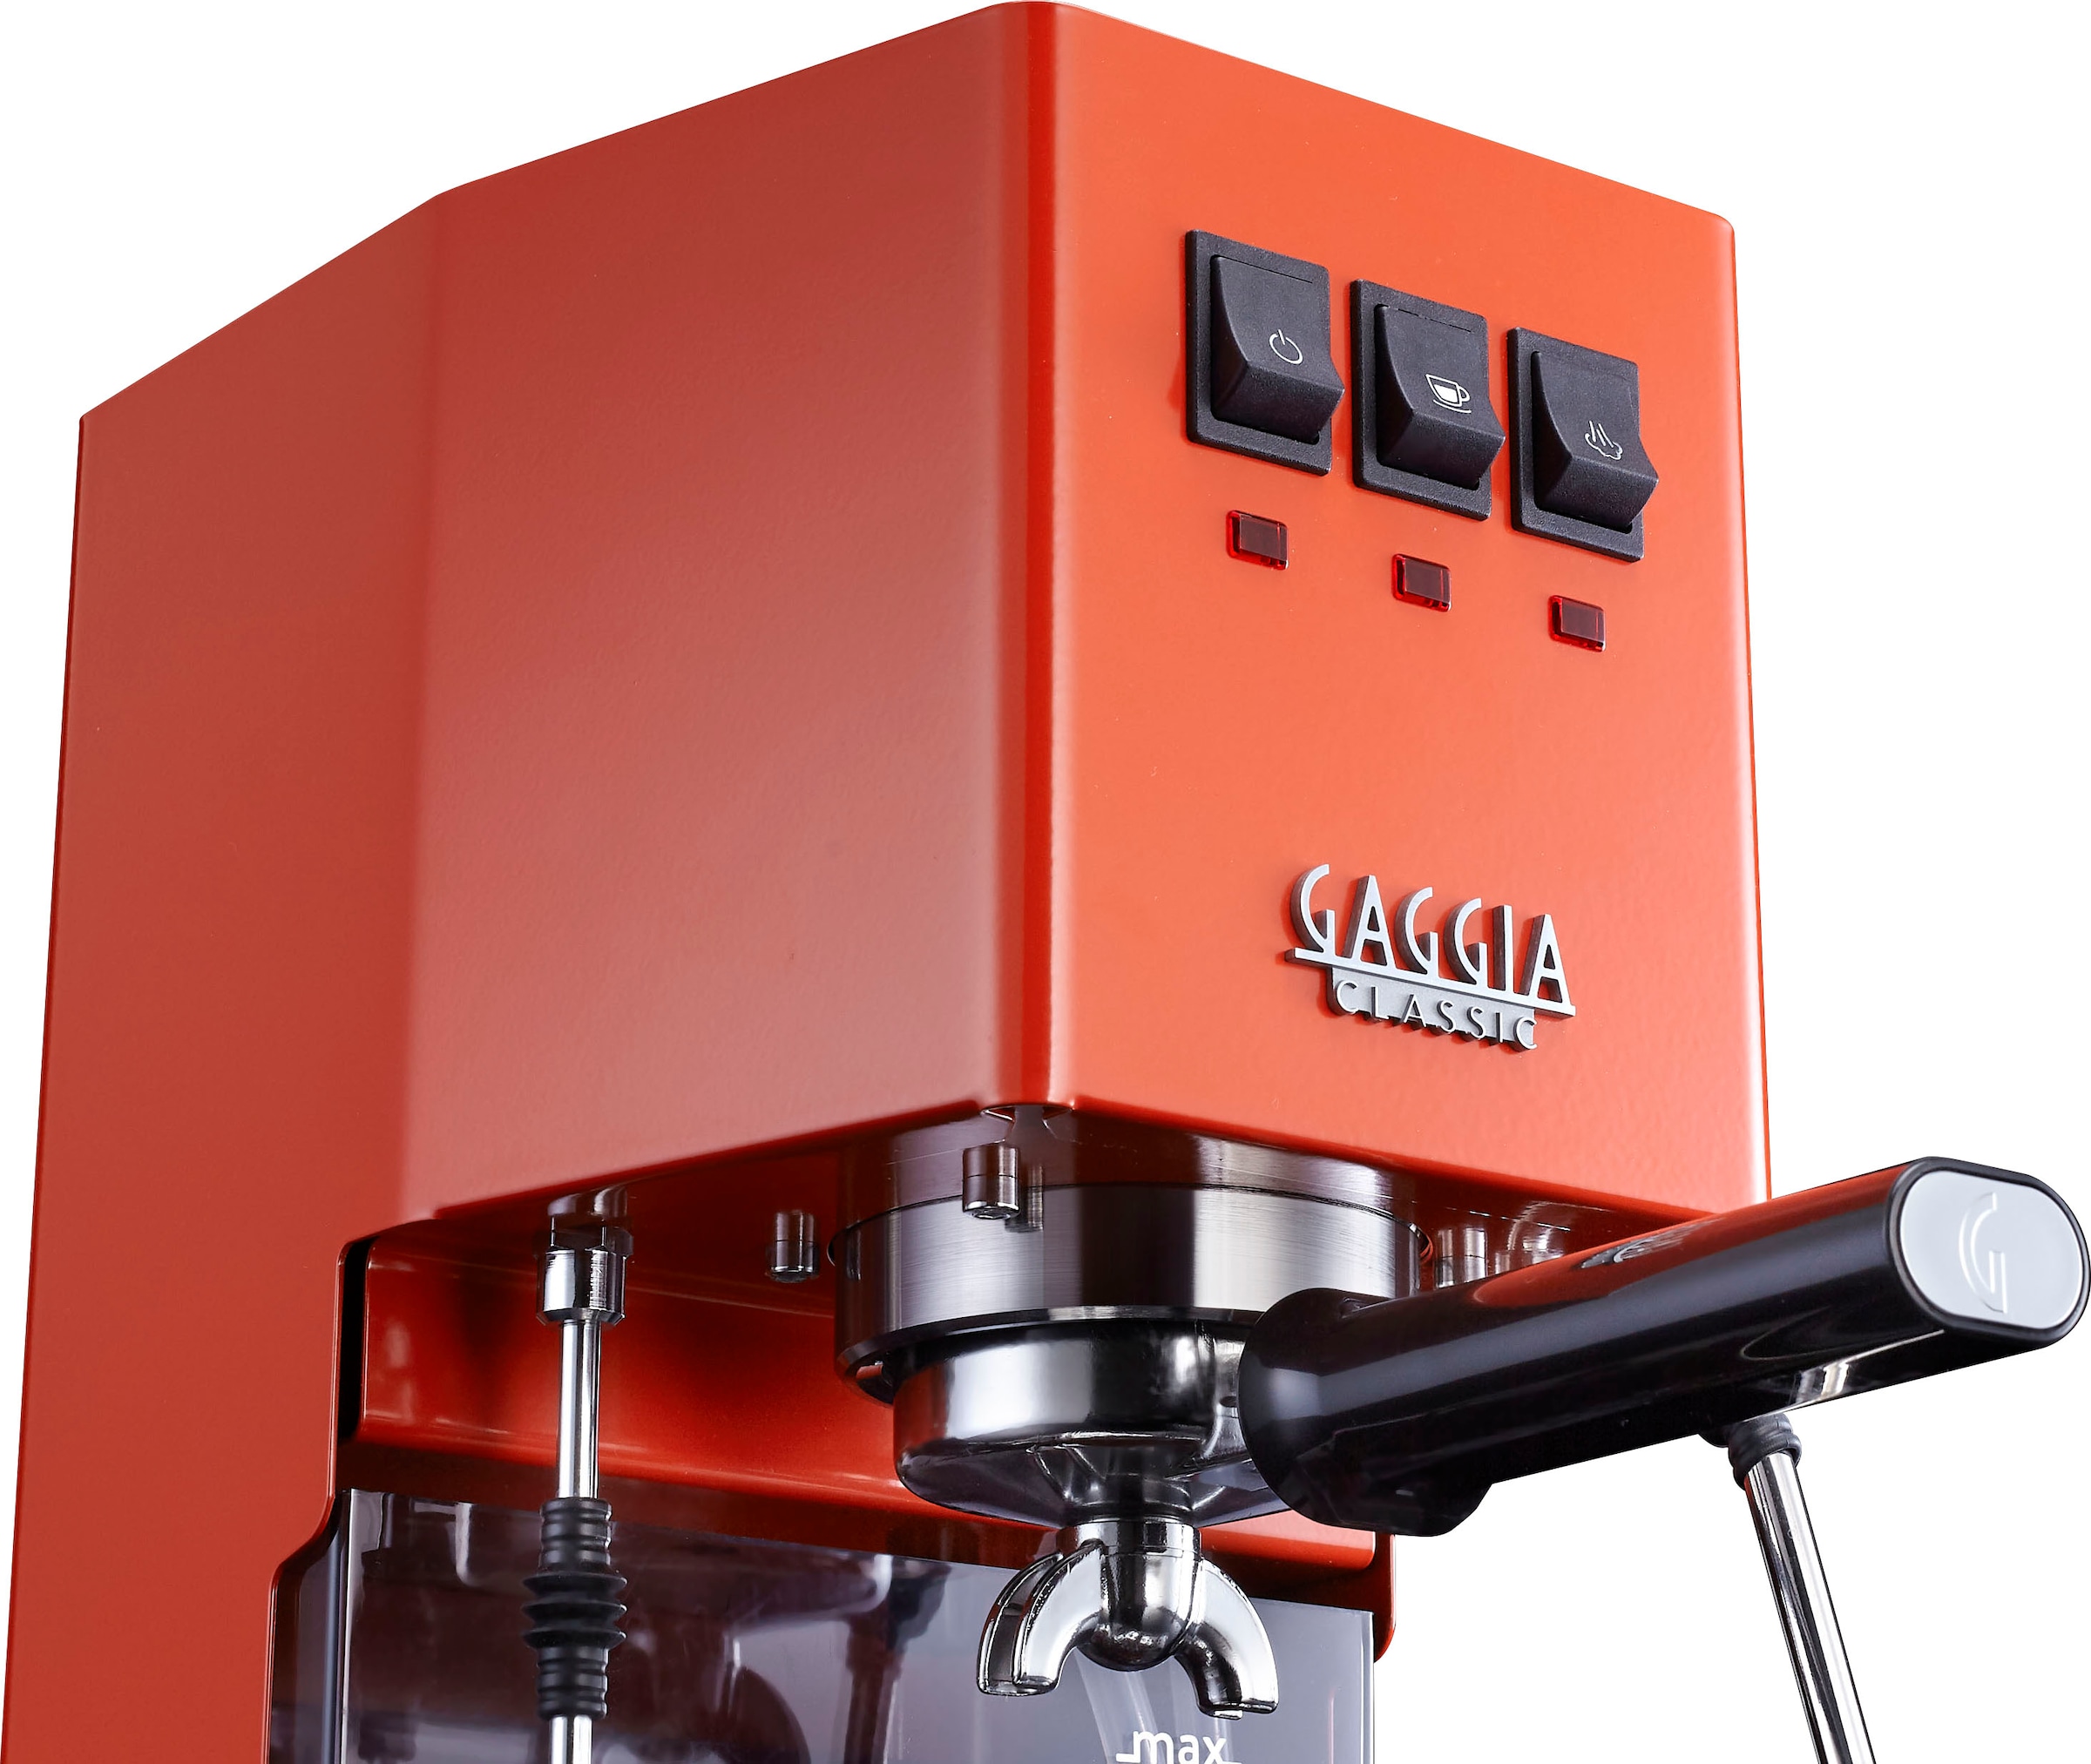 Gaggia Espressomaschine »Classic Evo Lobster Red«, Siebträger